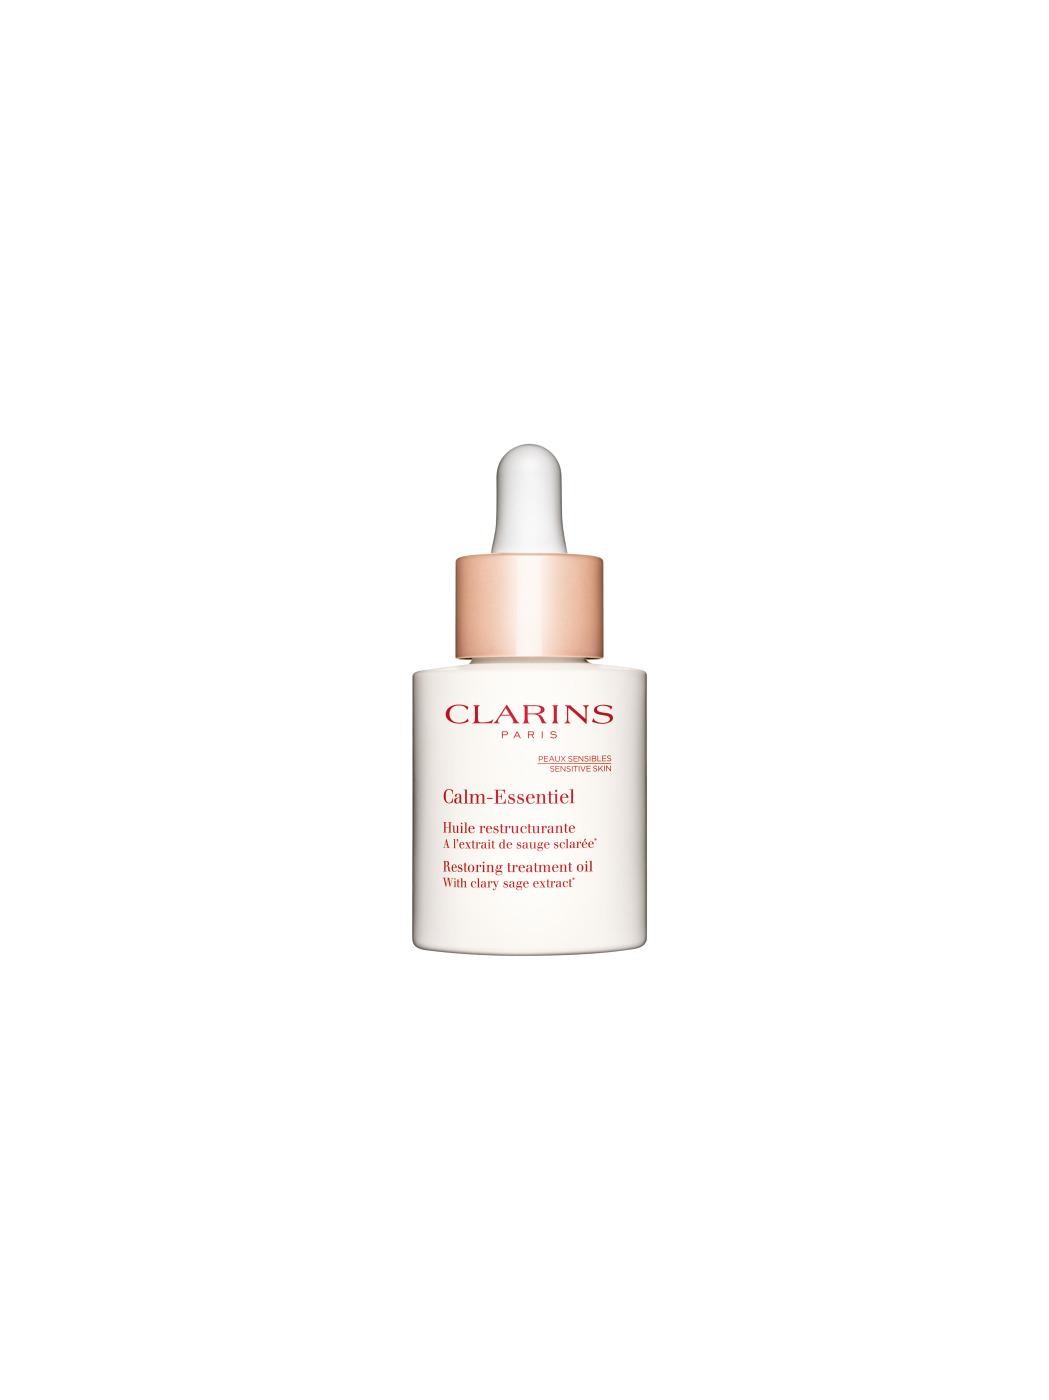 Clarins Calm-Essentiel Olio ristrutturante 30ml